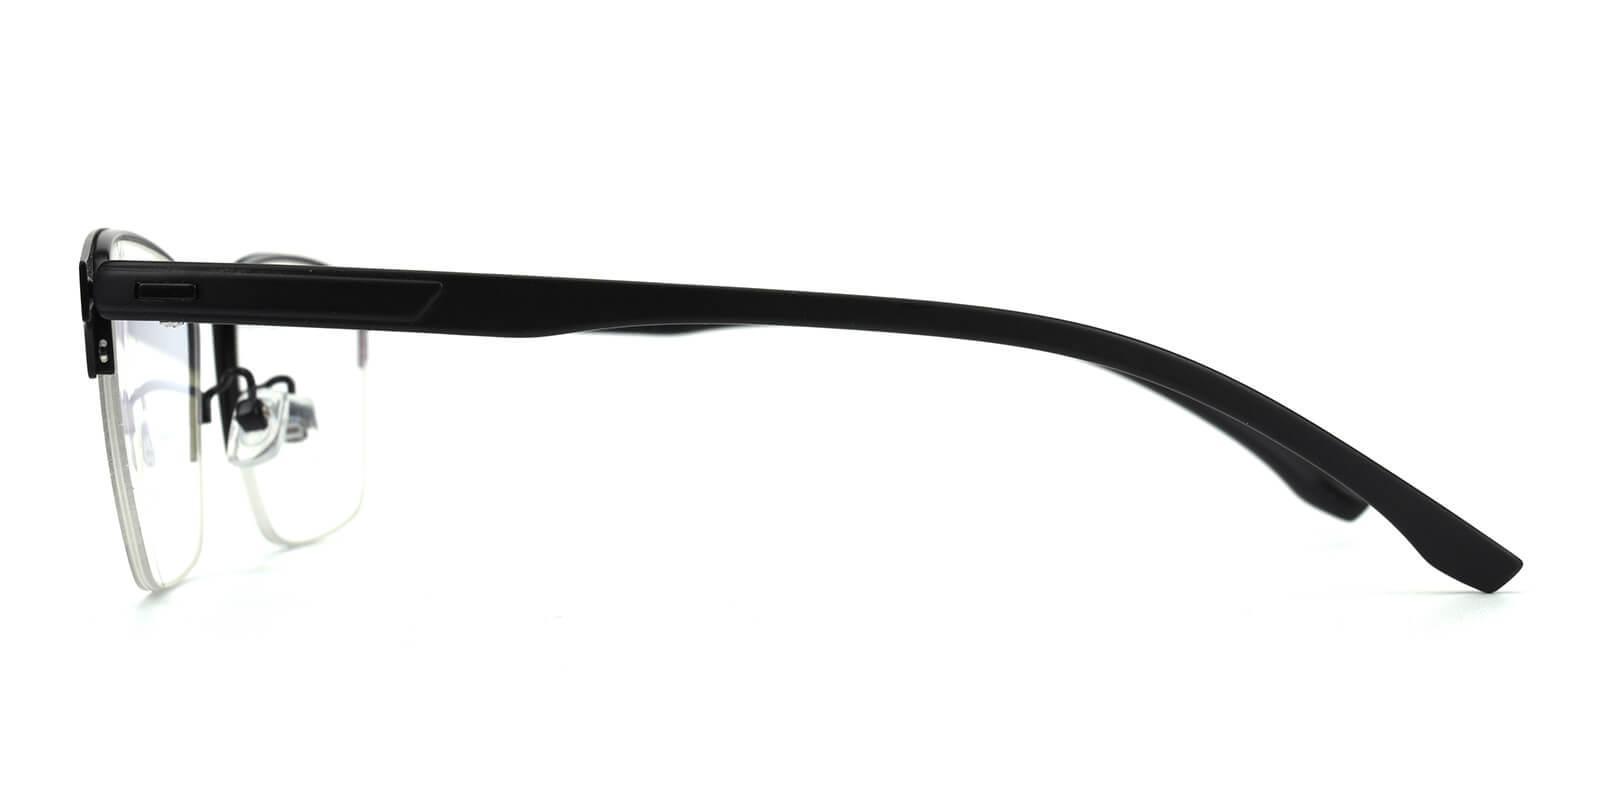 Ferrous Clip-On Black Metal Eyeglasses , NosePads , SpringHinges Frames from ABBE Glasses